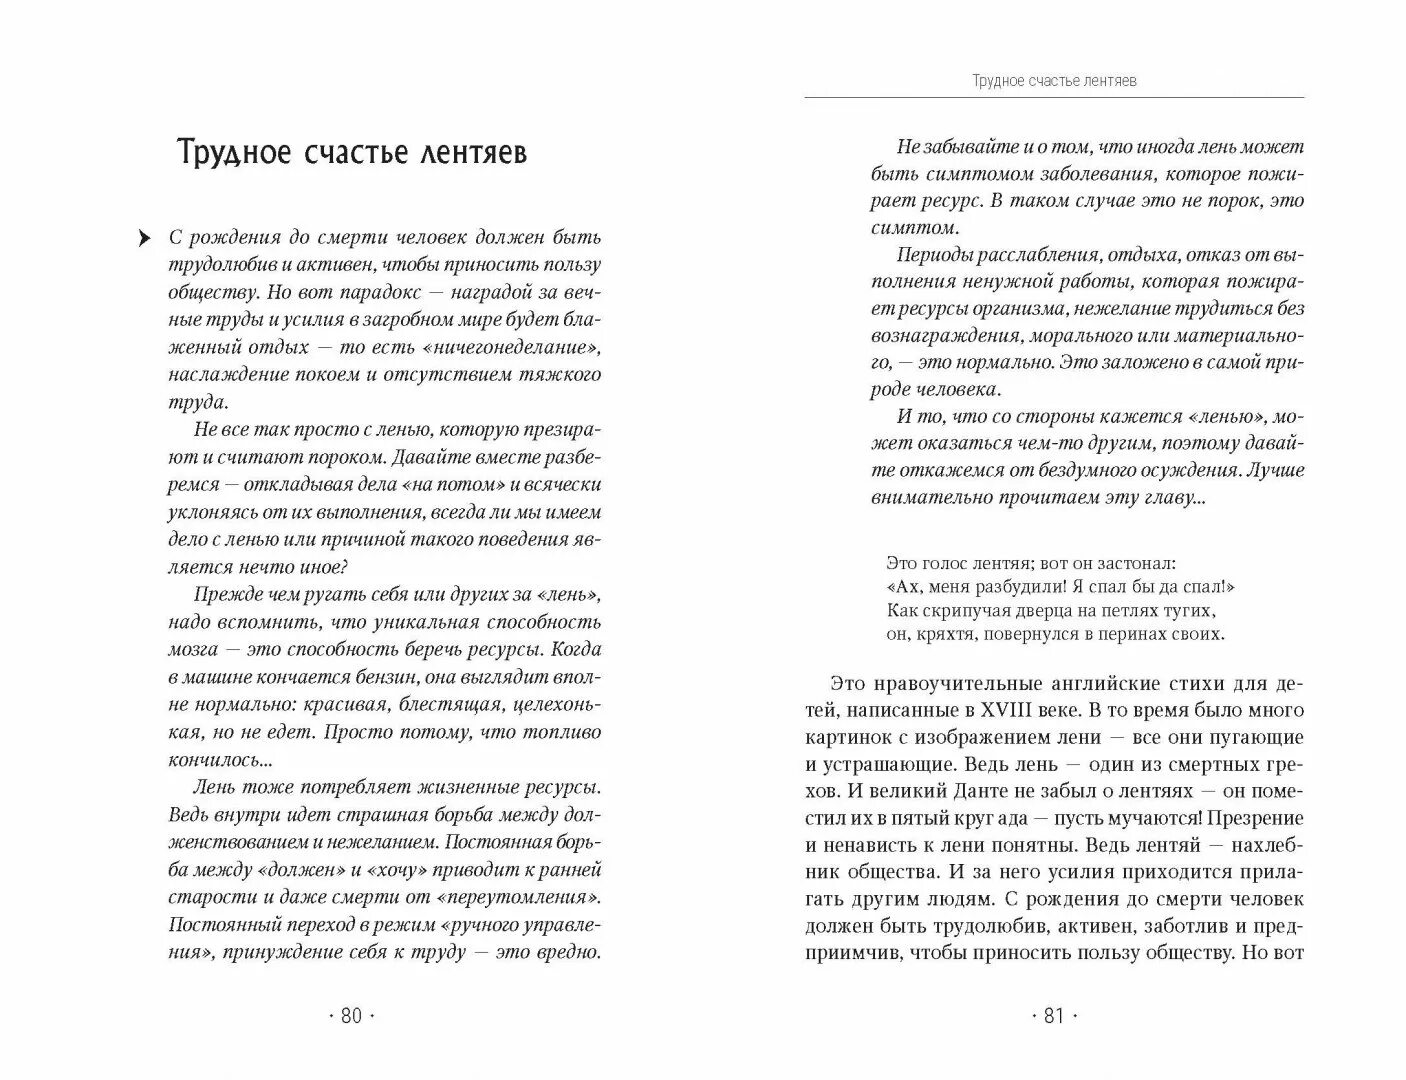 Кирьянова книги.